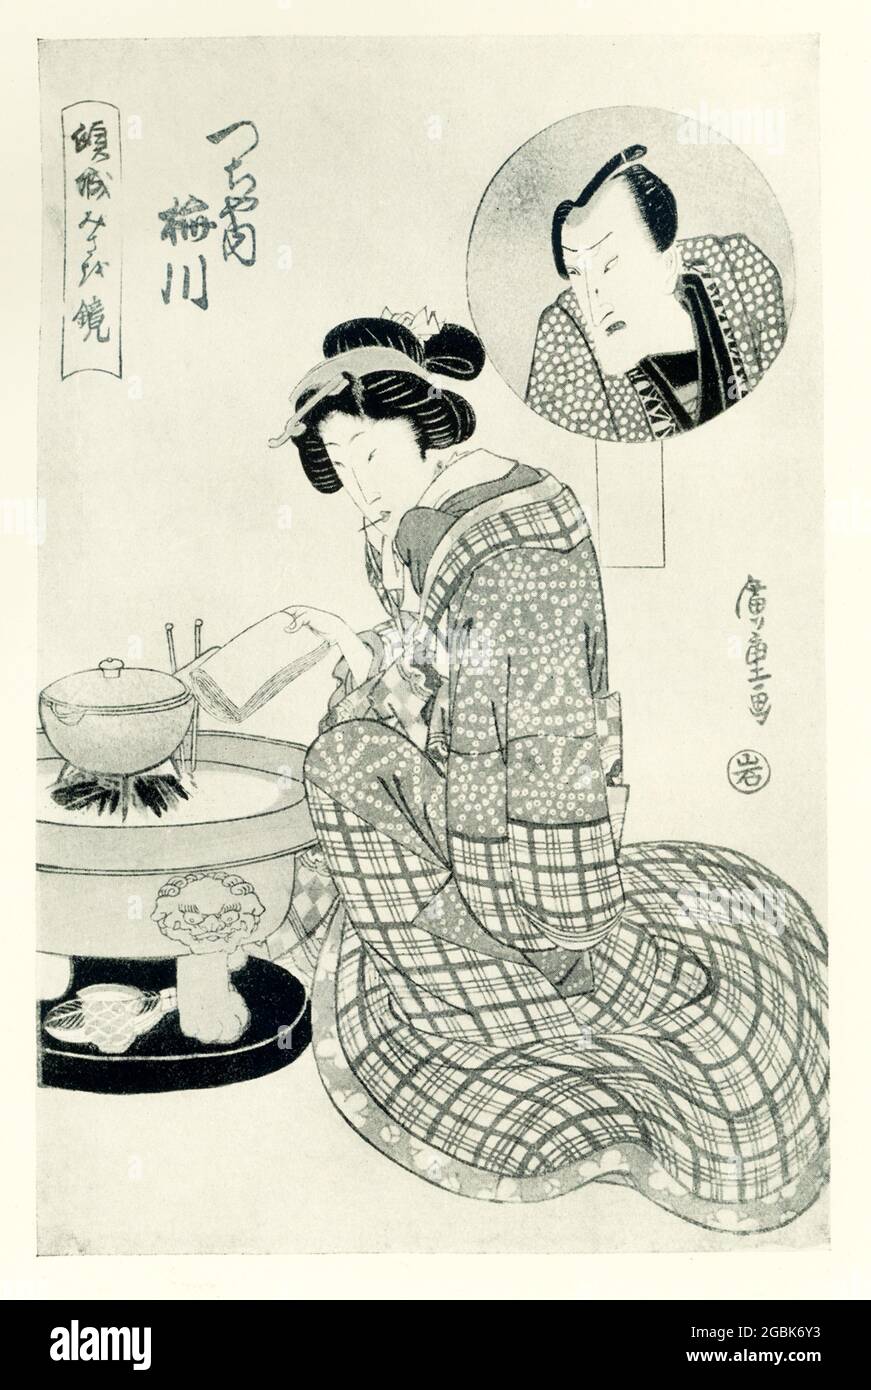 Die Bildunterschrift von 1920 lautet: Umegawa von Tsuchi-ya. Der eingekreist ist ihr Liebhaber als Schauspielerin. Es handelt sich um eine Serie 'EIN Spiegel treuer Kurtisanen', die von Hiroshige unterzeichnet wurde. Der Verleger ist Iwato-ya. Umegawa aus Tsuchi-ya war Kurtisane.Utagawa Hiroshige, geboren Andō Hiroshige, war ein japanischer Ukiyo-e Künstler, der als der letzte große Meister dieser Tradition galt. Stockfoto